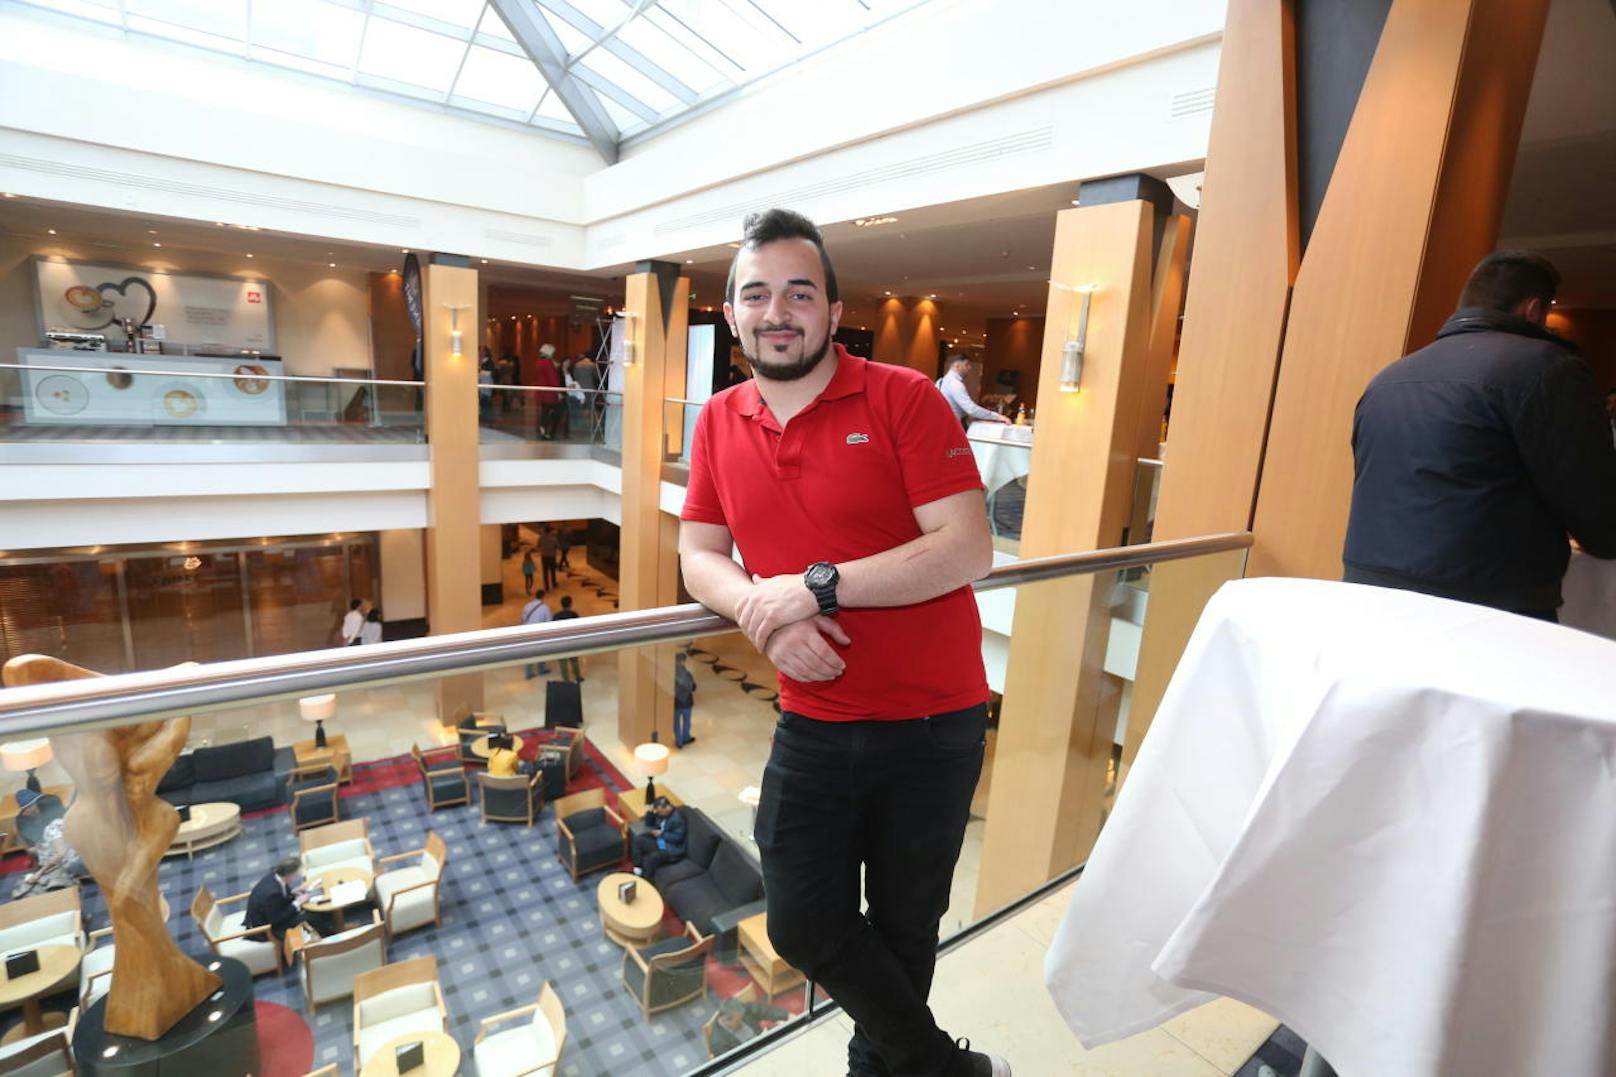 Kubilay Tekgündüz, 19 Jahre, sucht eine Lehrstelle im Bereich der IT-Technik